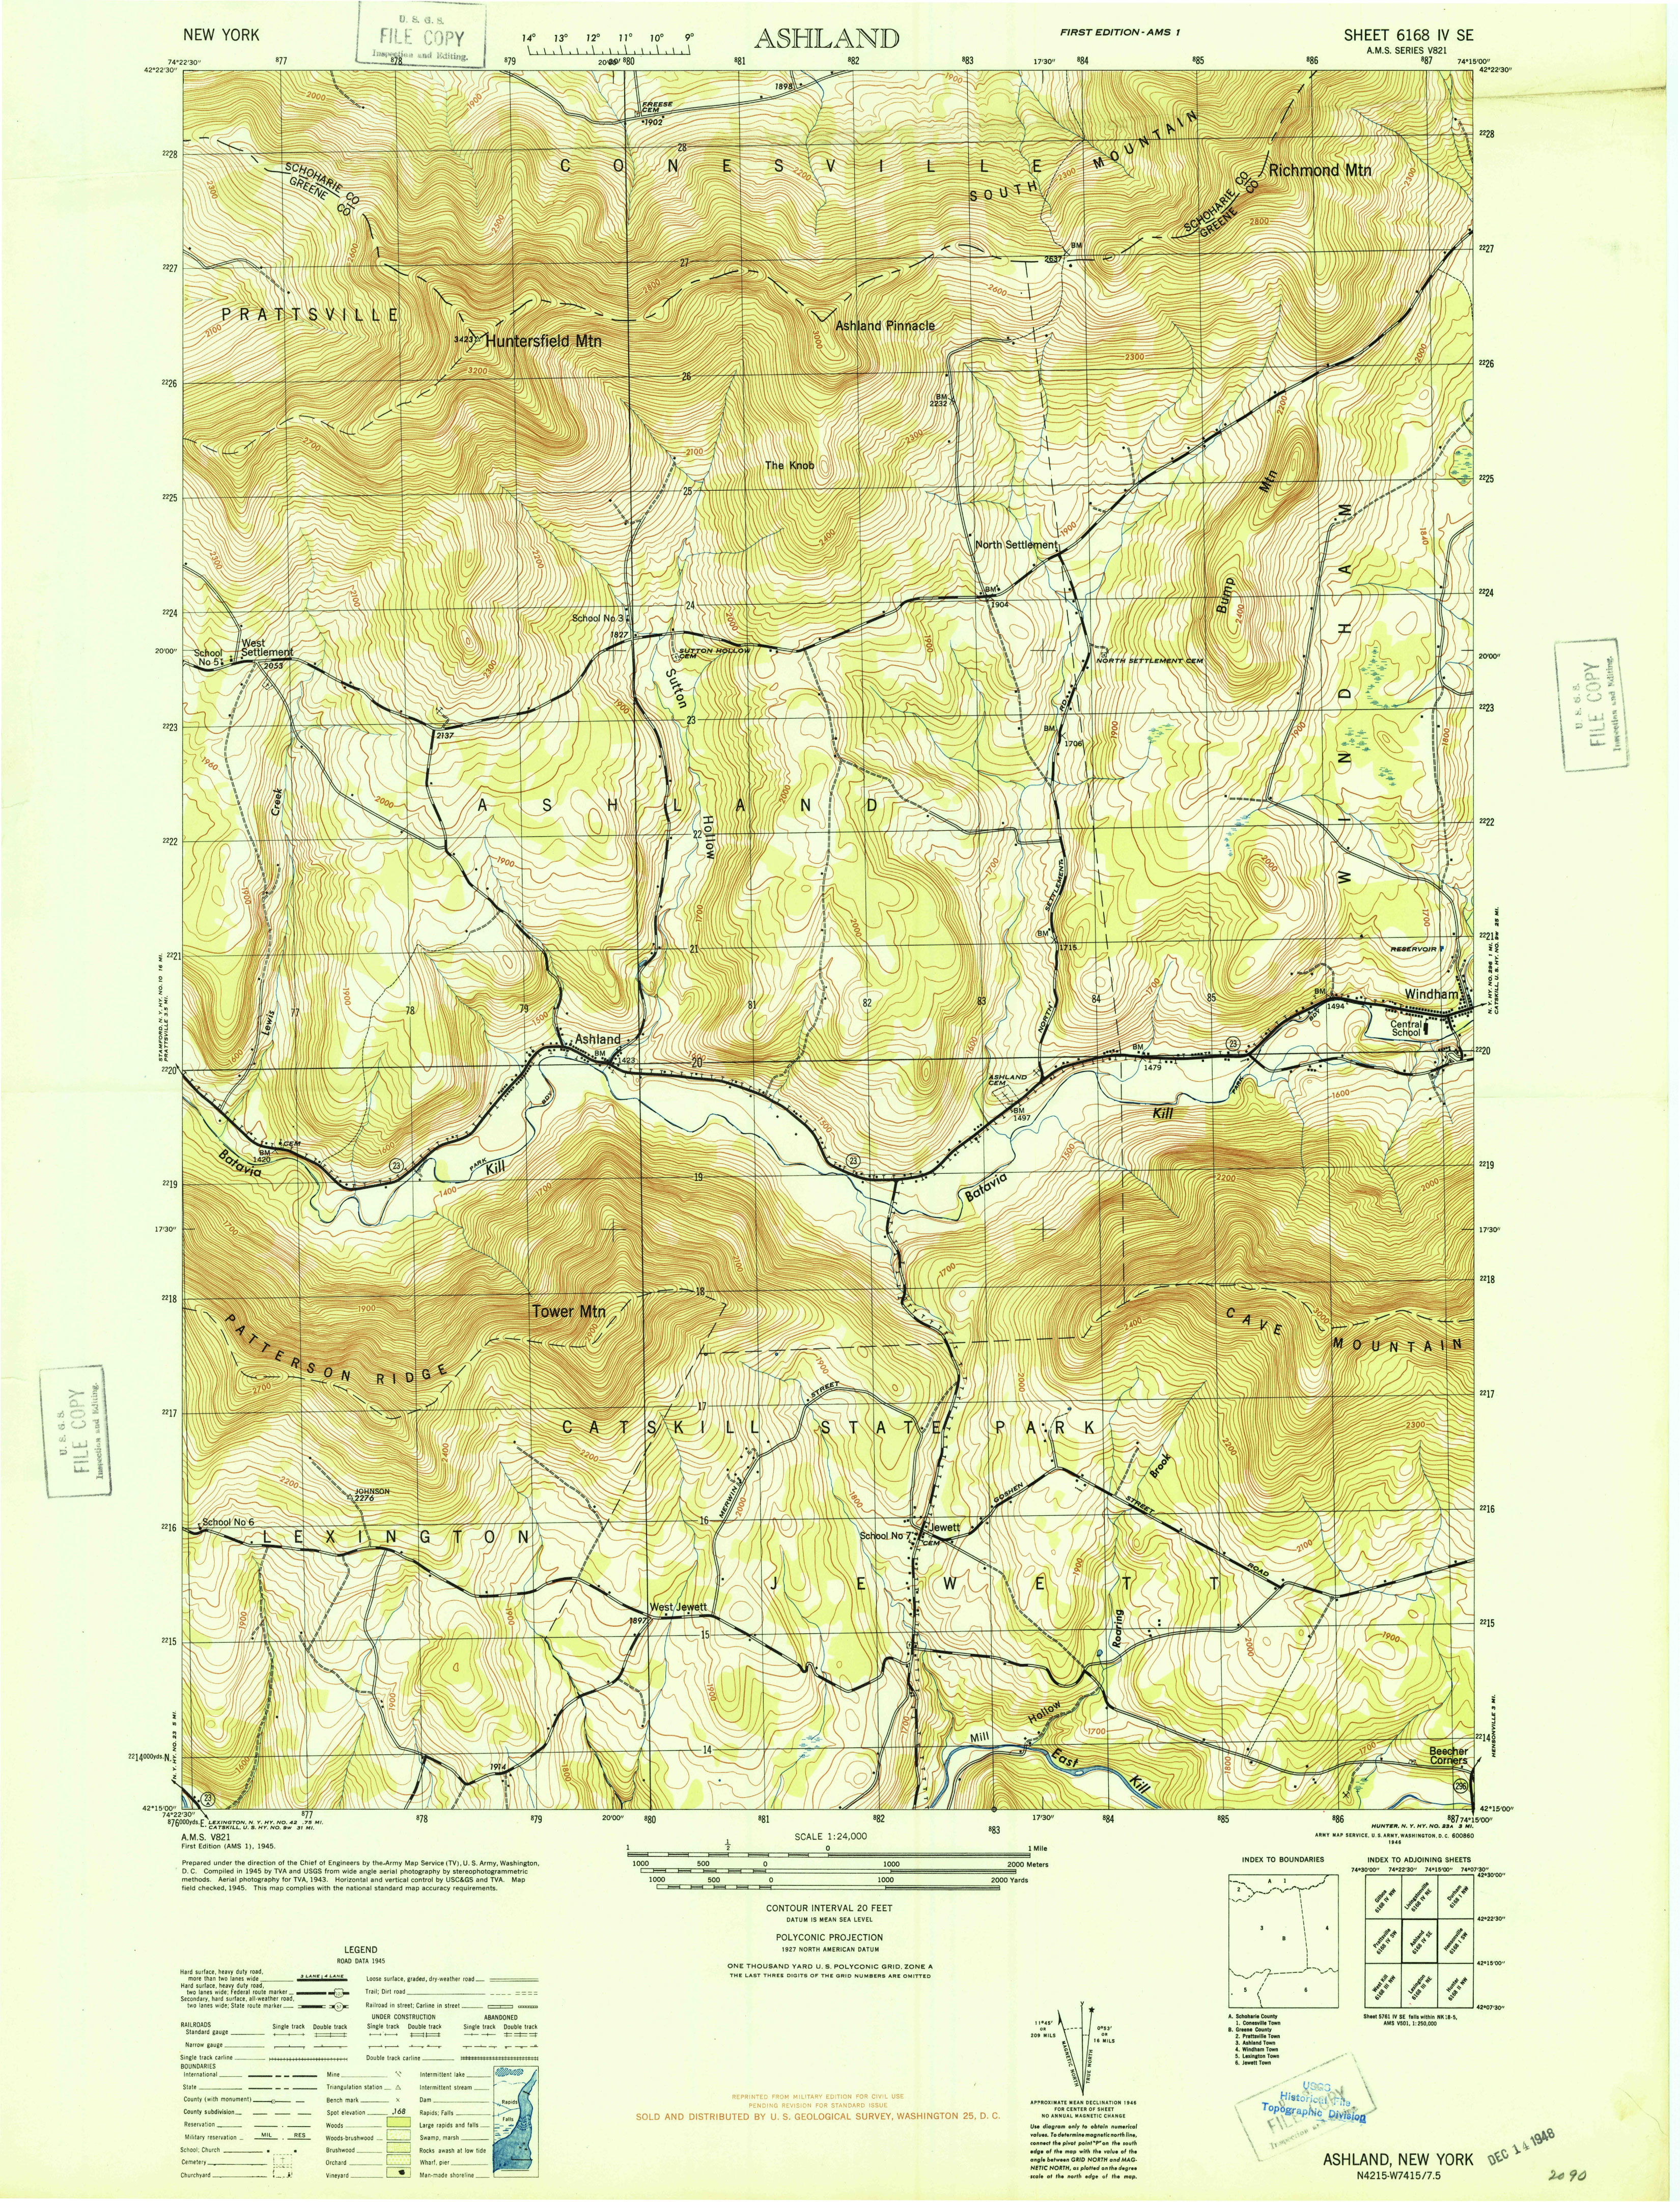 USGS Ashland 1946 Full 